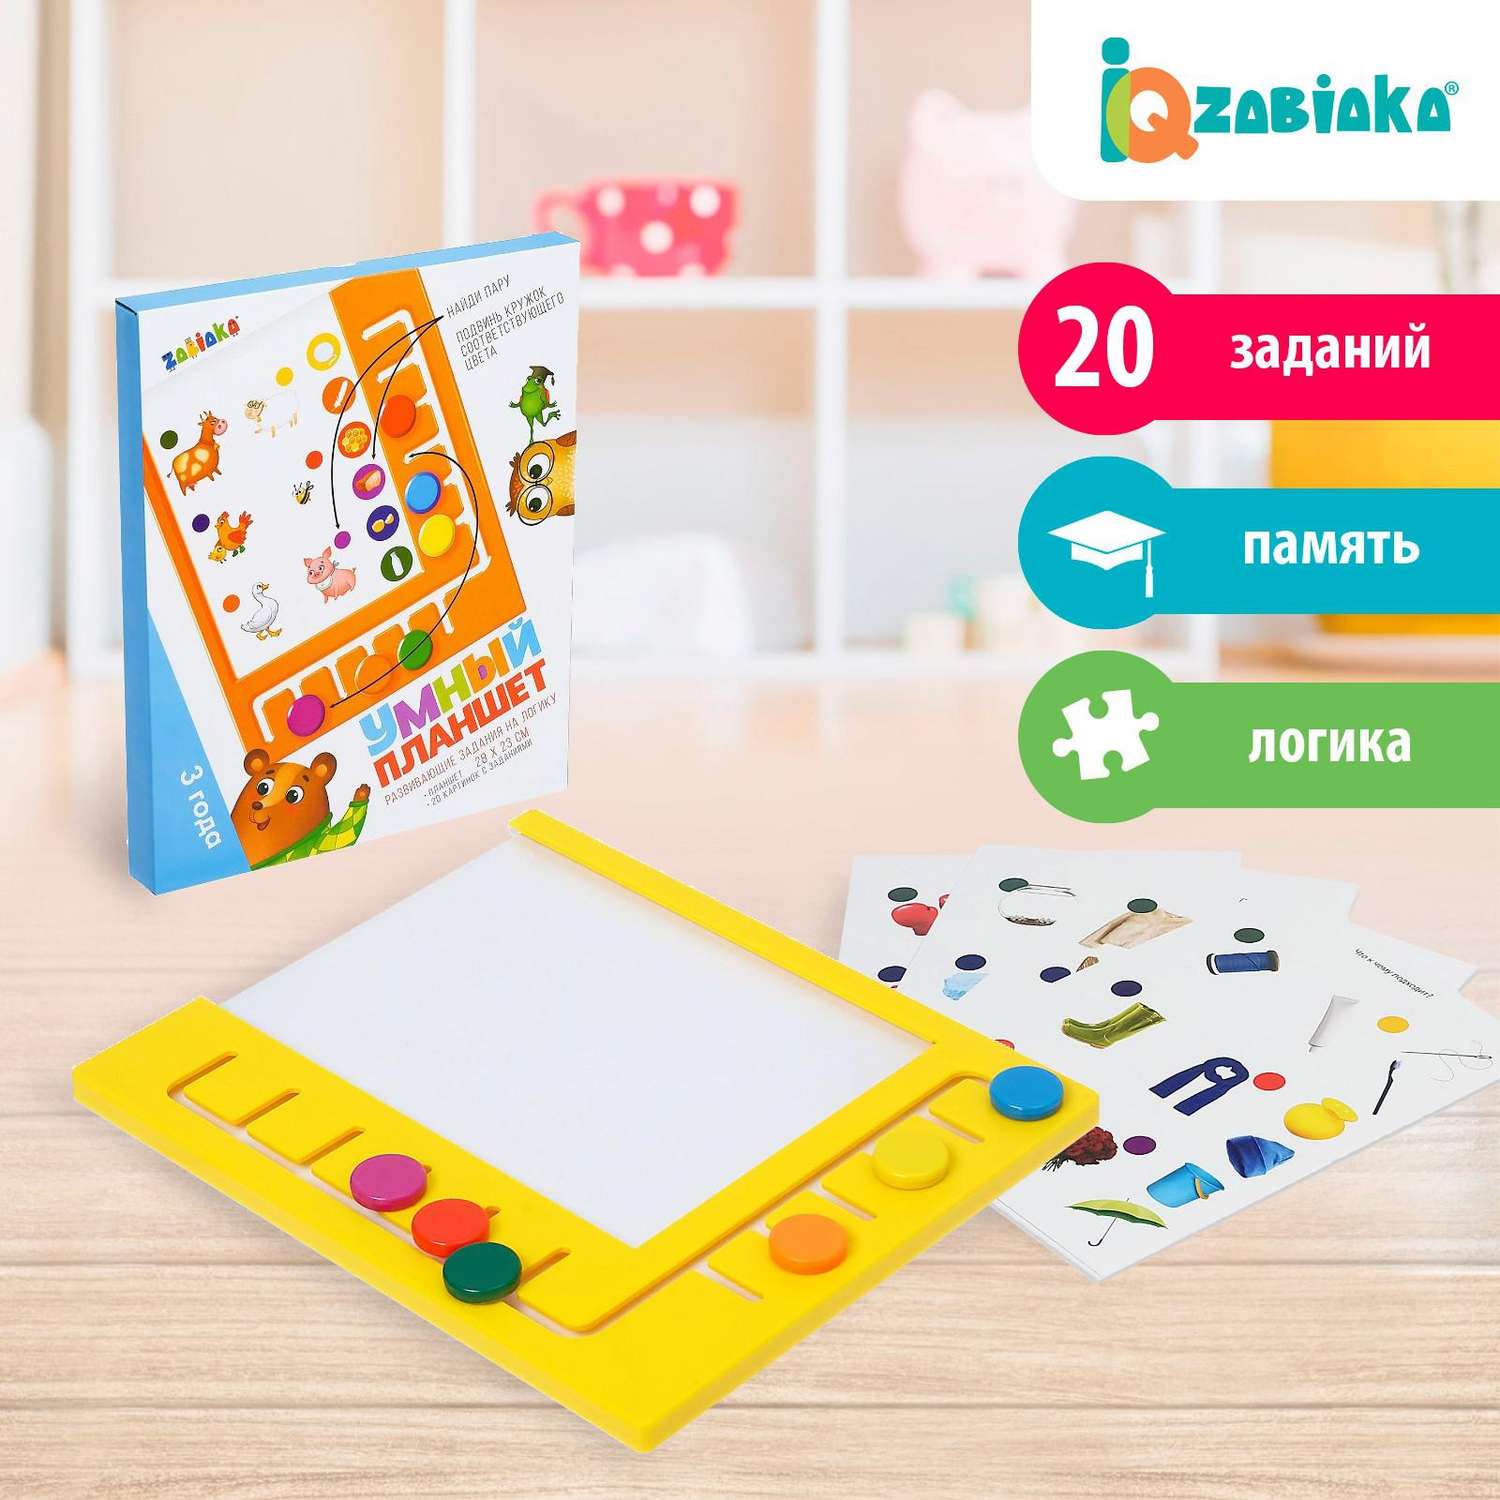 Обучающий набор IQ-ZABIAKA Умный планшет с карточками - фото 2